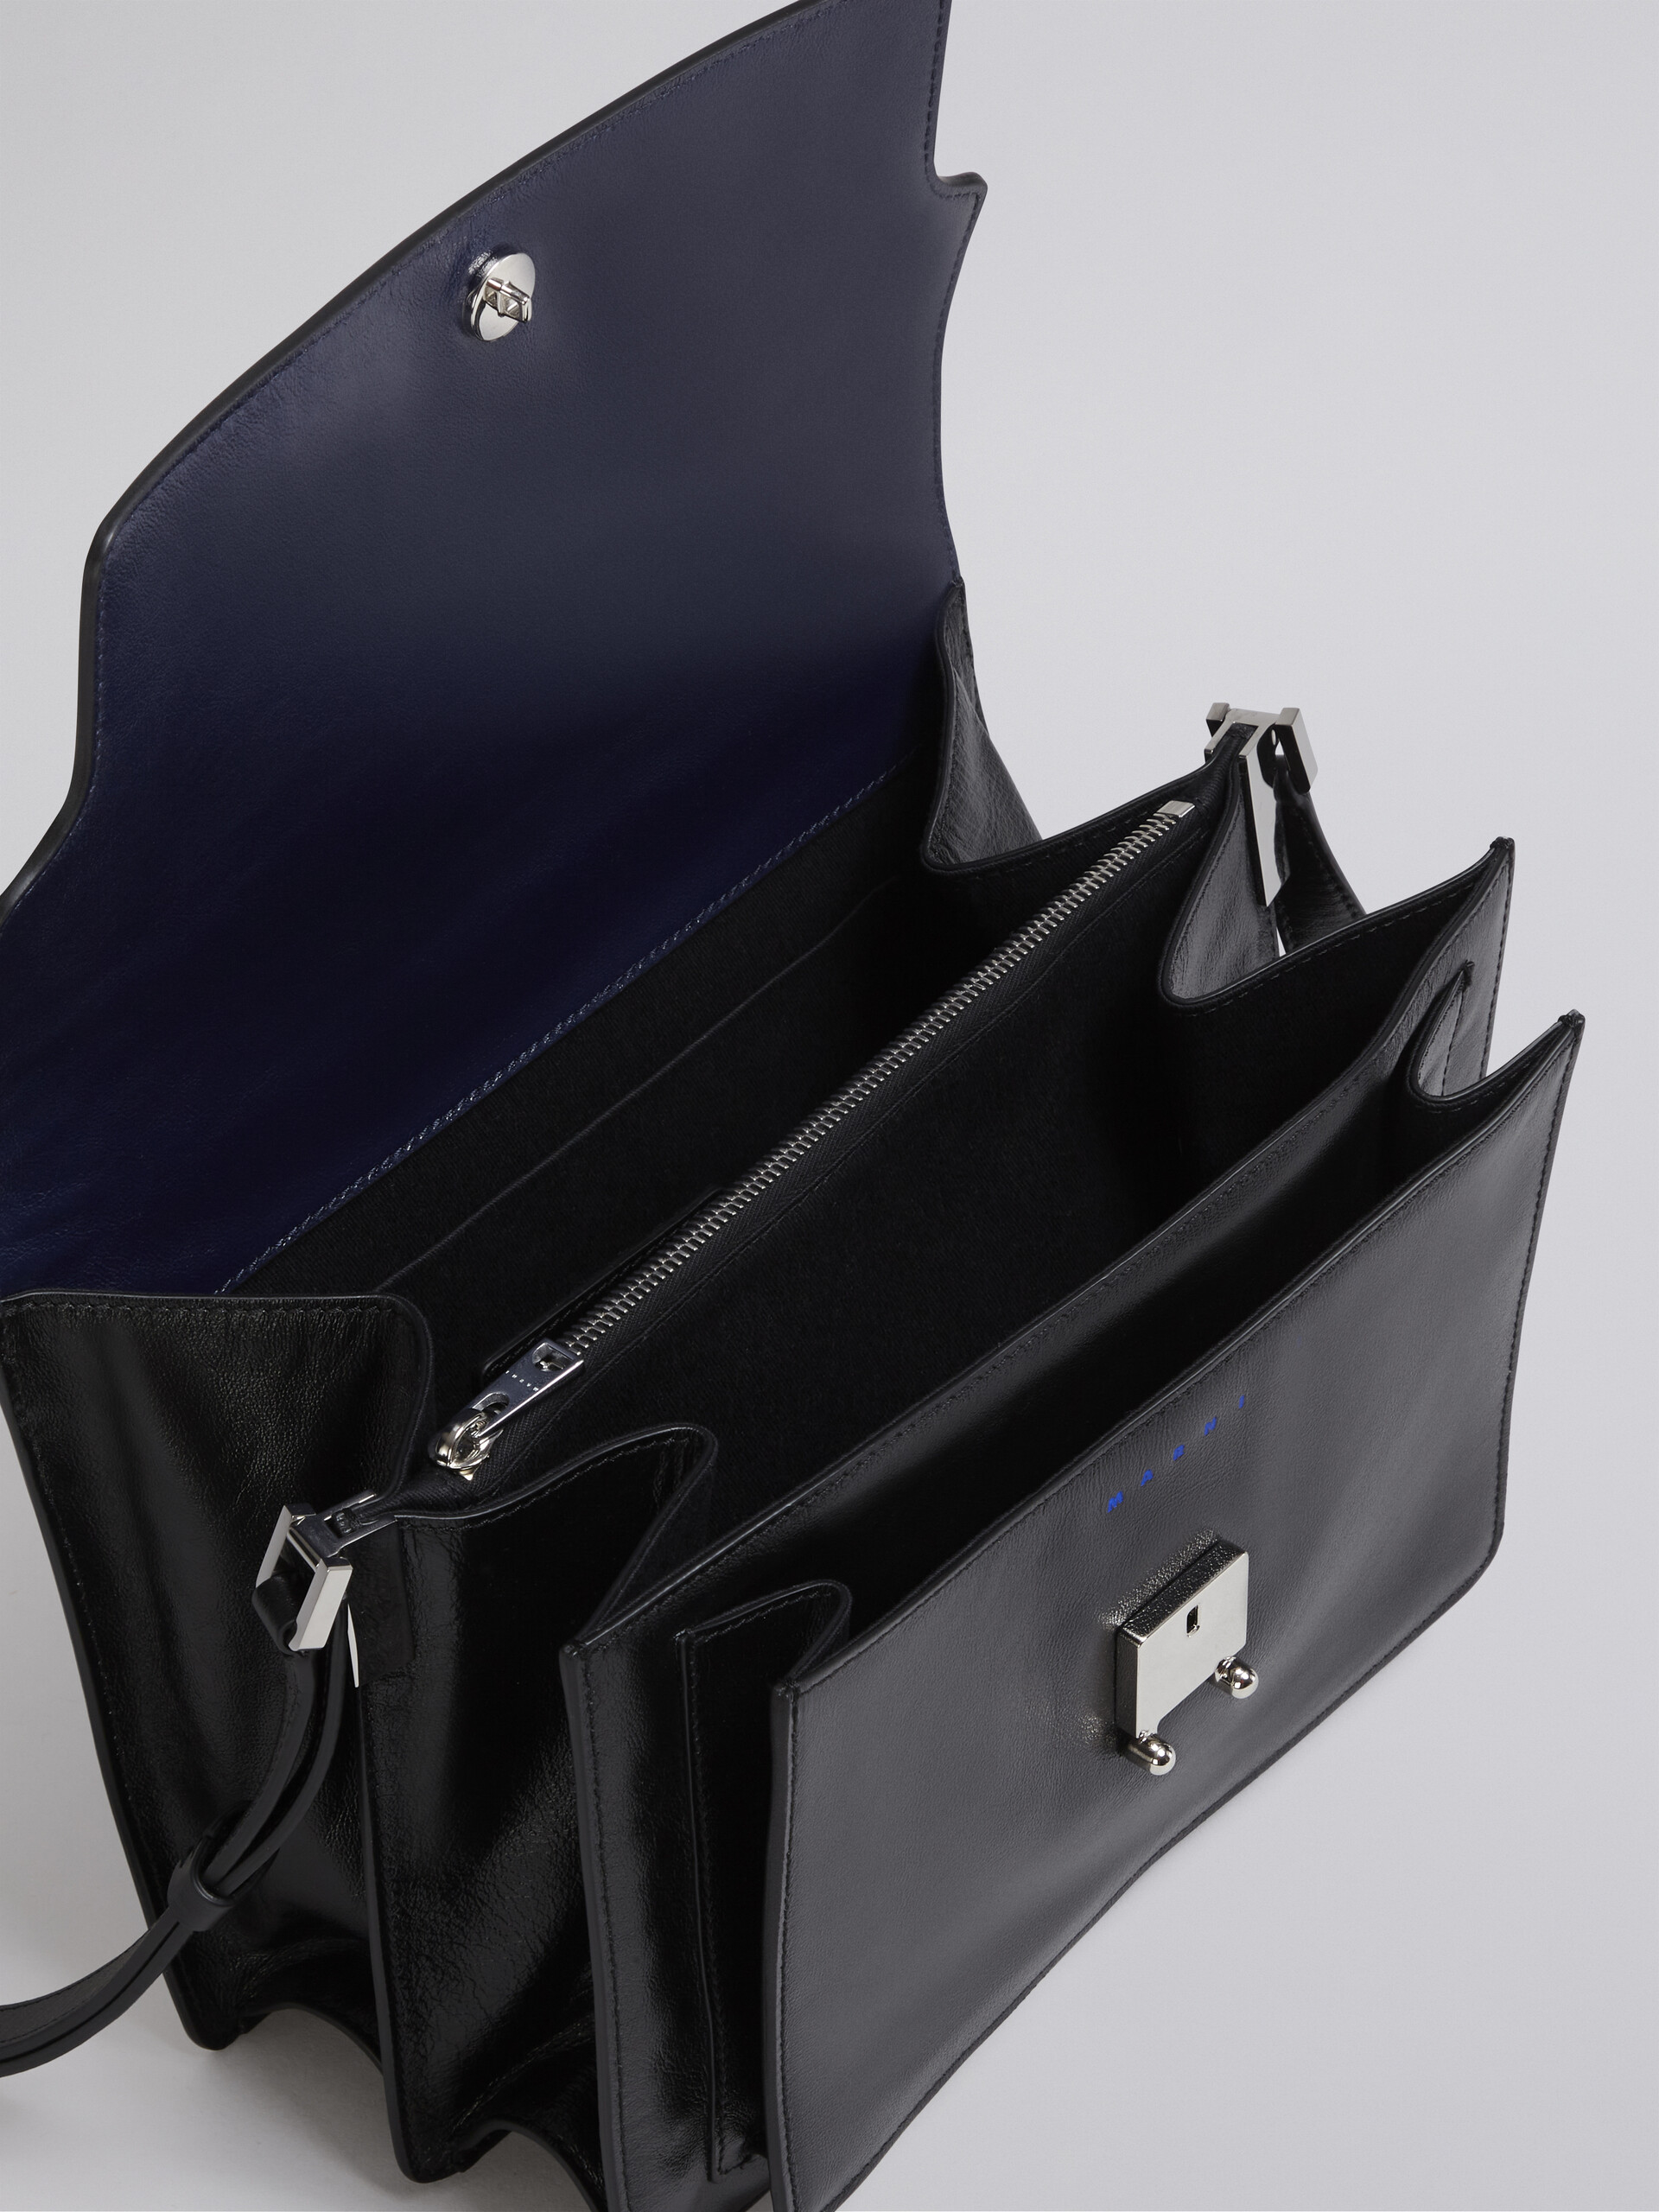 TRUNK SOFT large bag in blue and black leather - Shoulder Bag - Image 4